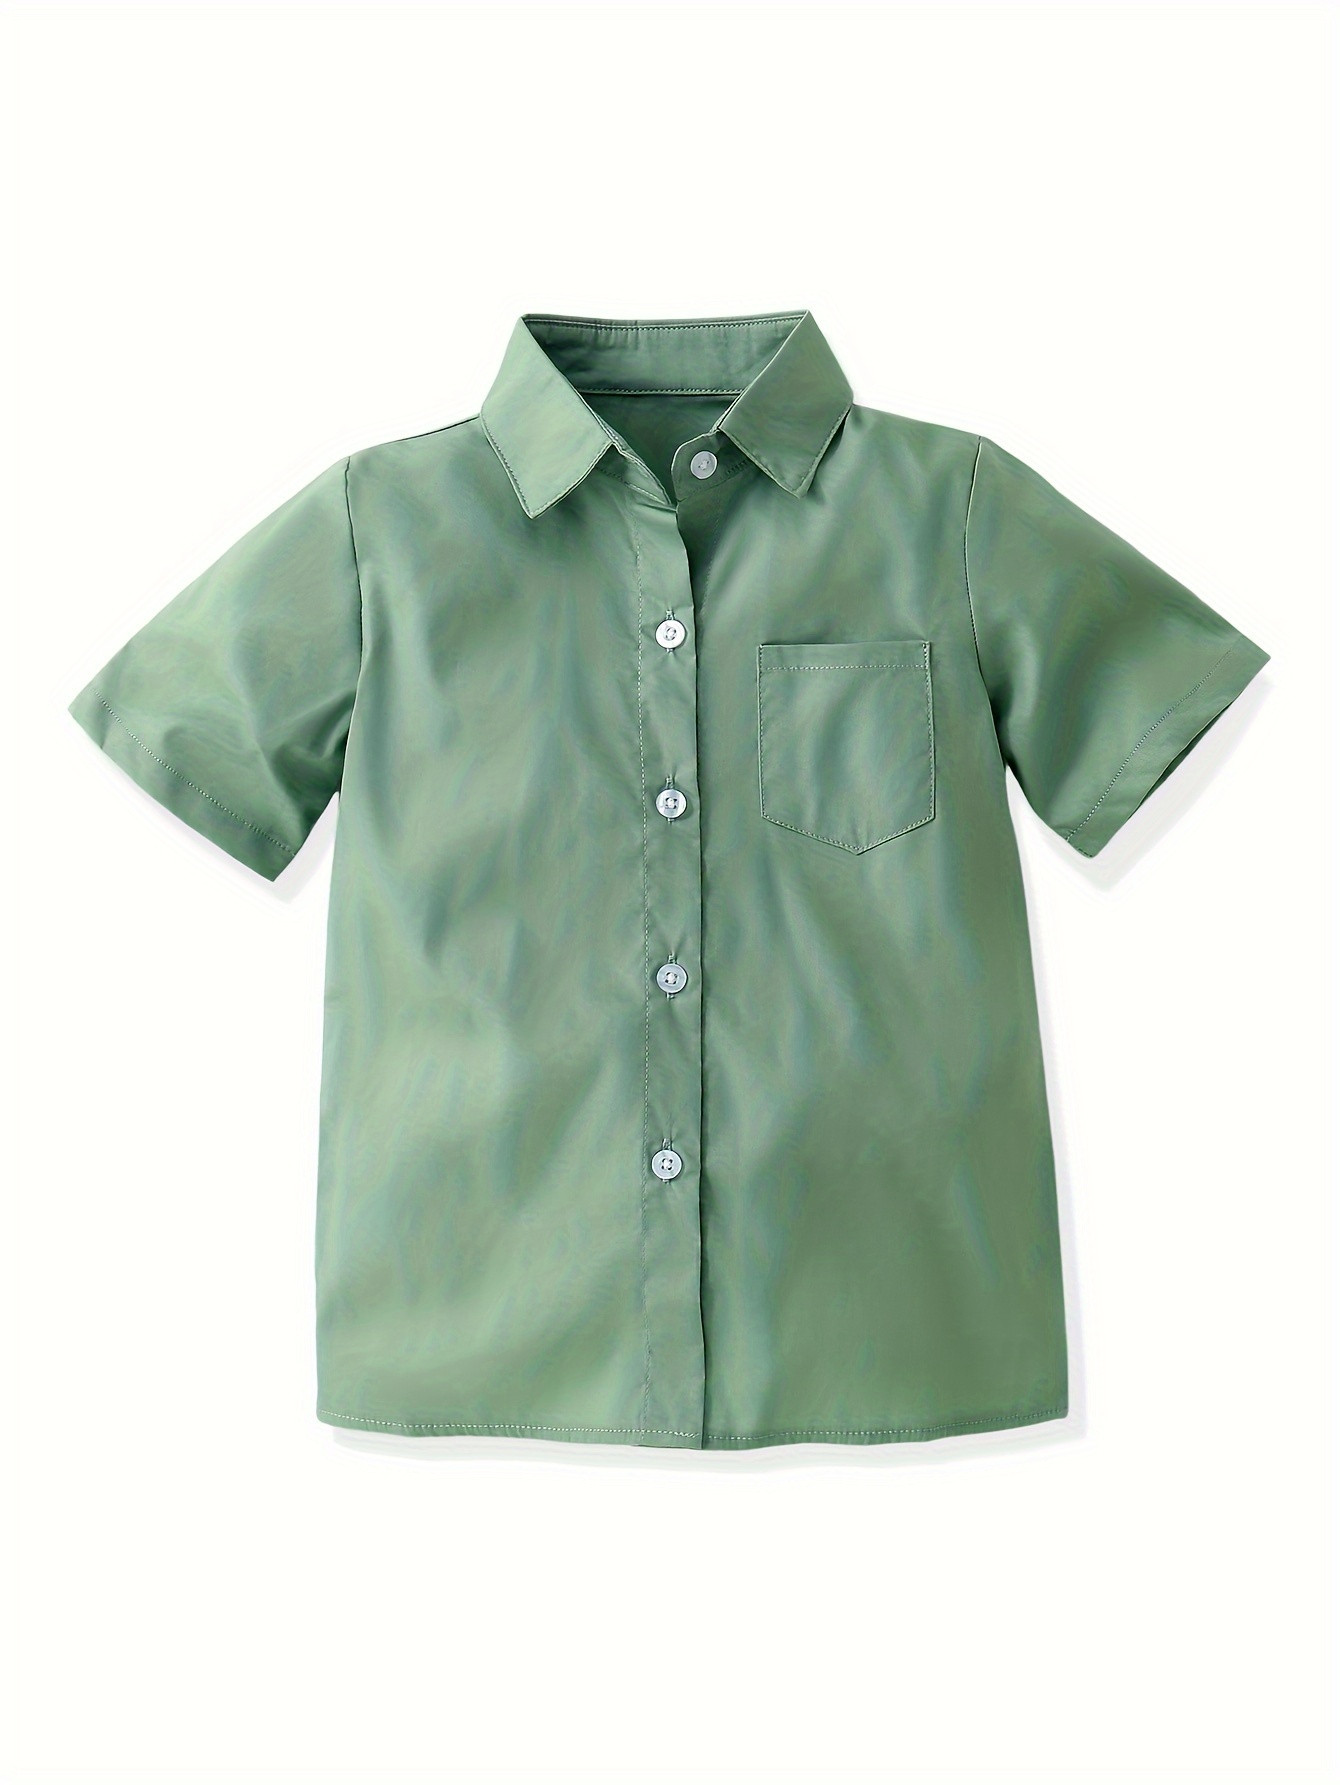 Camiseta lisa niños peinado 20s verde Fuji